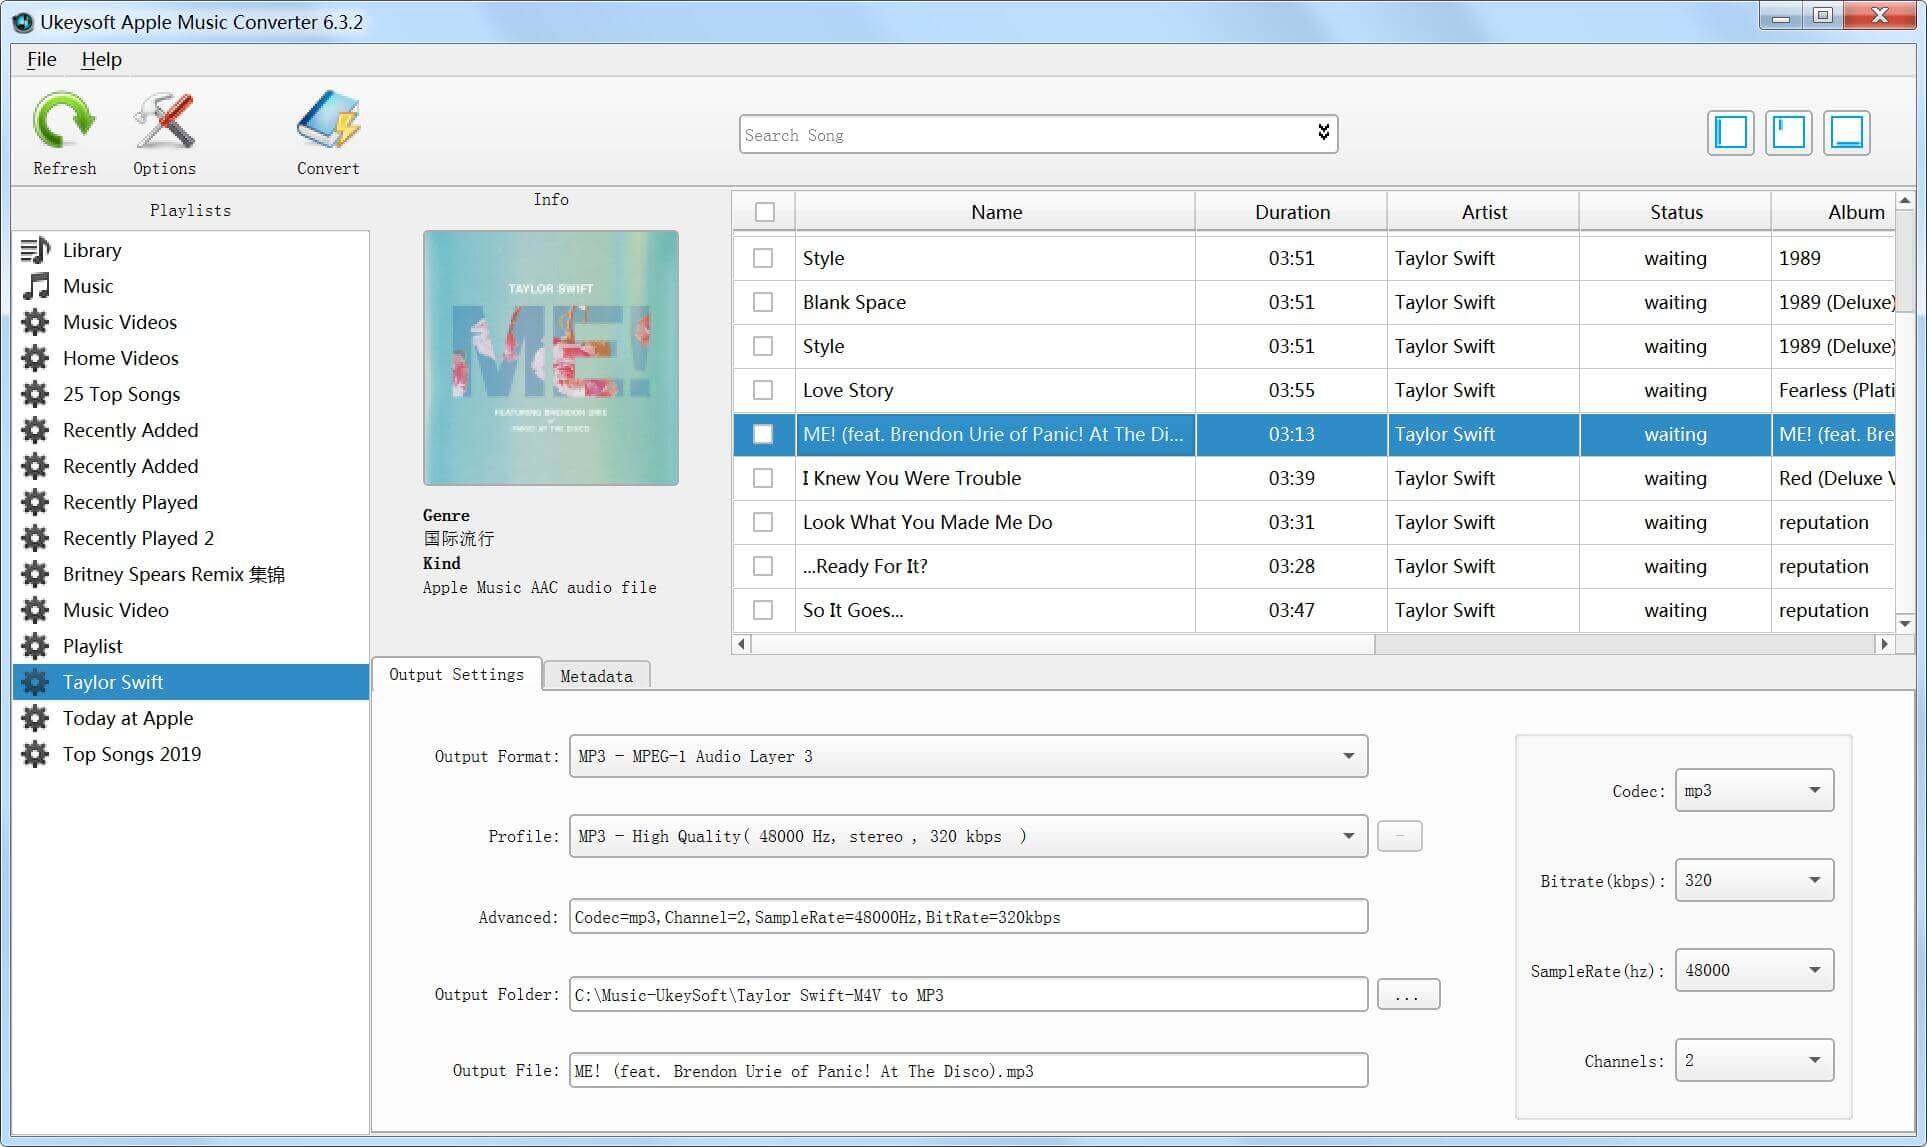 إطلاق UkeySoft محول الموسيقى أبل